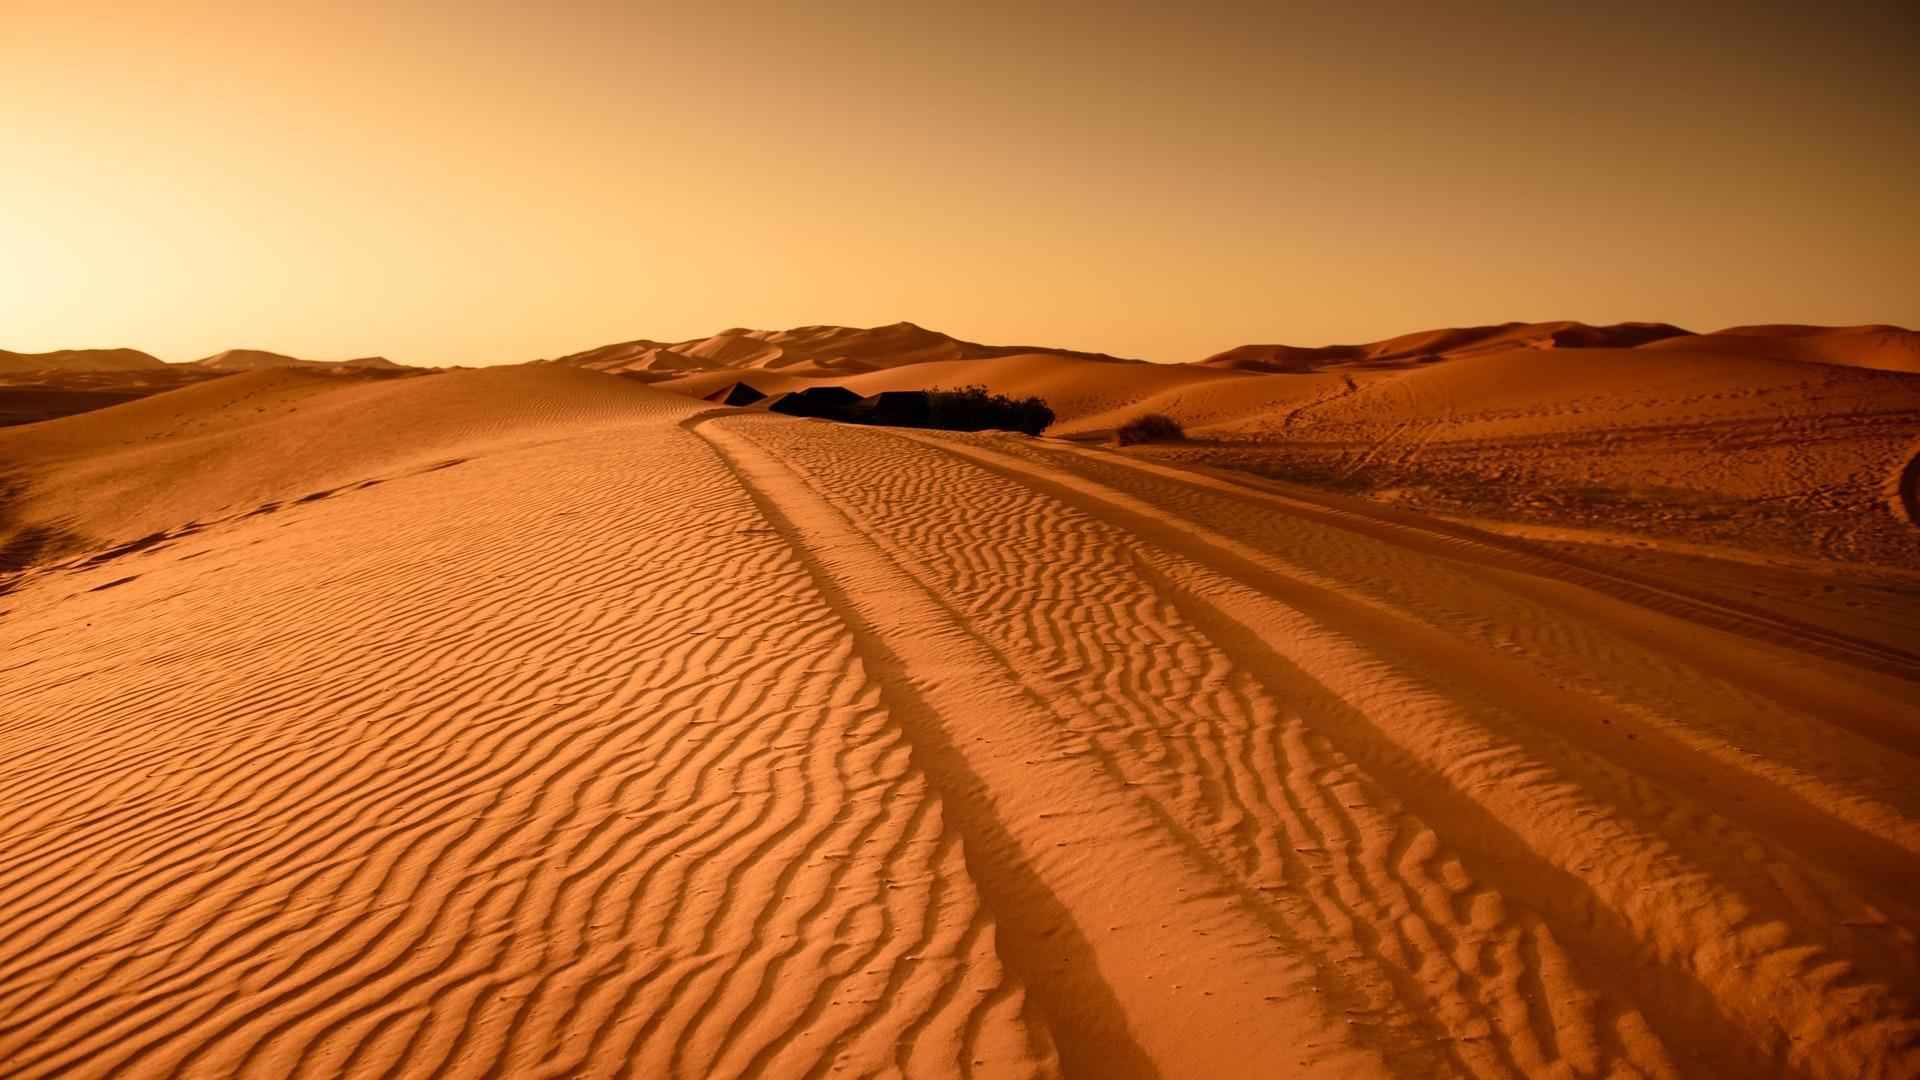 荒无人烟的沙漠风光风景电脑壁纸-